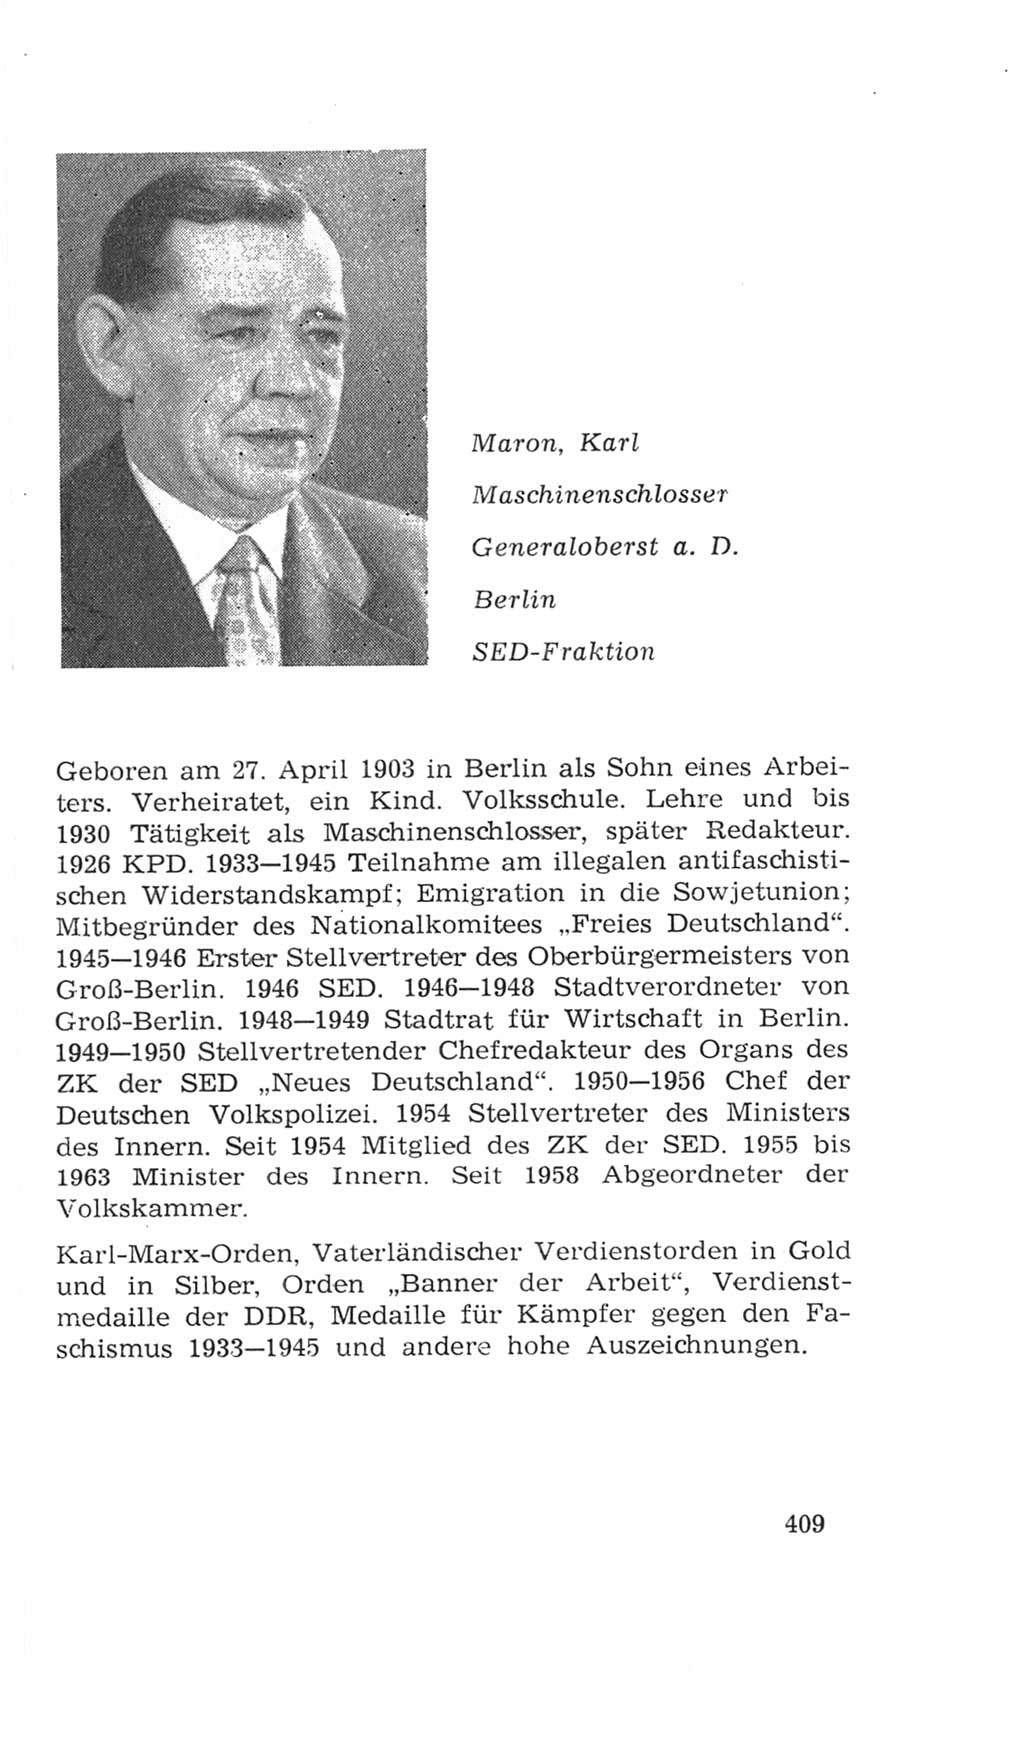 Volkskammer (VK) der Deutschen Demokratischen Republik (DDR), 4. Wahlperiode 1963-1967, Seite 409 (VK. DDR 4. WP. 1963-1967, S. 409)